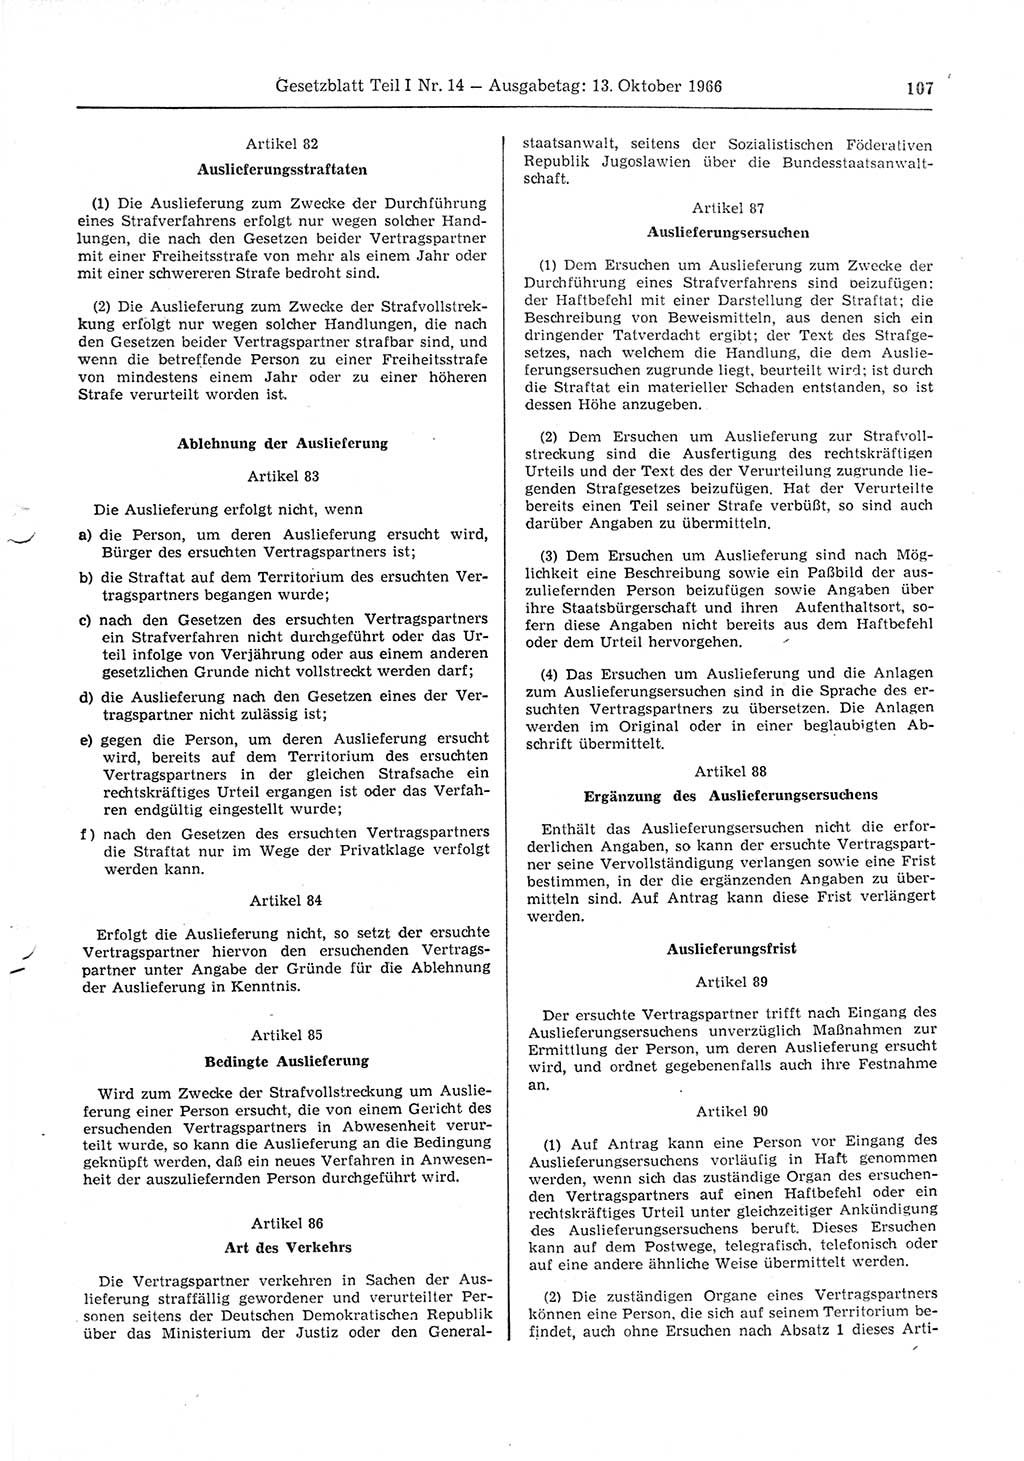 Gesetzblatt (GBl.) der Deutschen Demokratischen Republik (DDR) Teil Ⅰ 1966, Seite 107 (GBl. DDR Ⅰ 1966, S. 107)